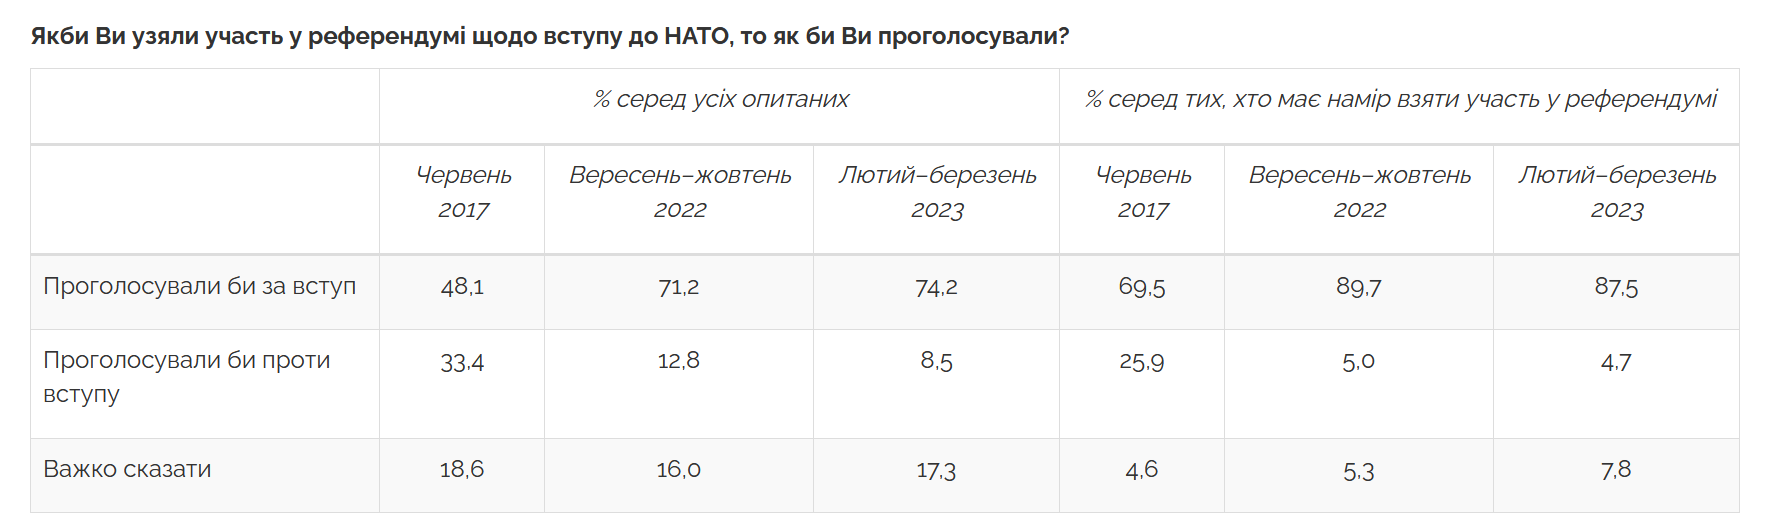 Сколько украинцев считают неприемлемыми переговоры с РФ и выступают за вступление Украины в НАТО: результаты опроса